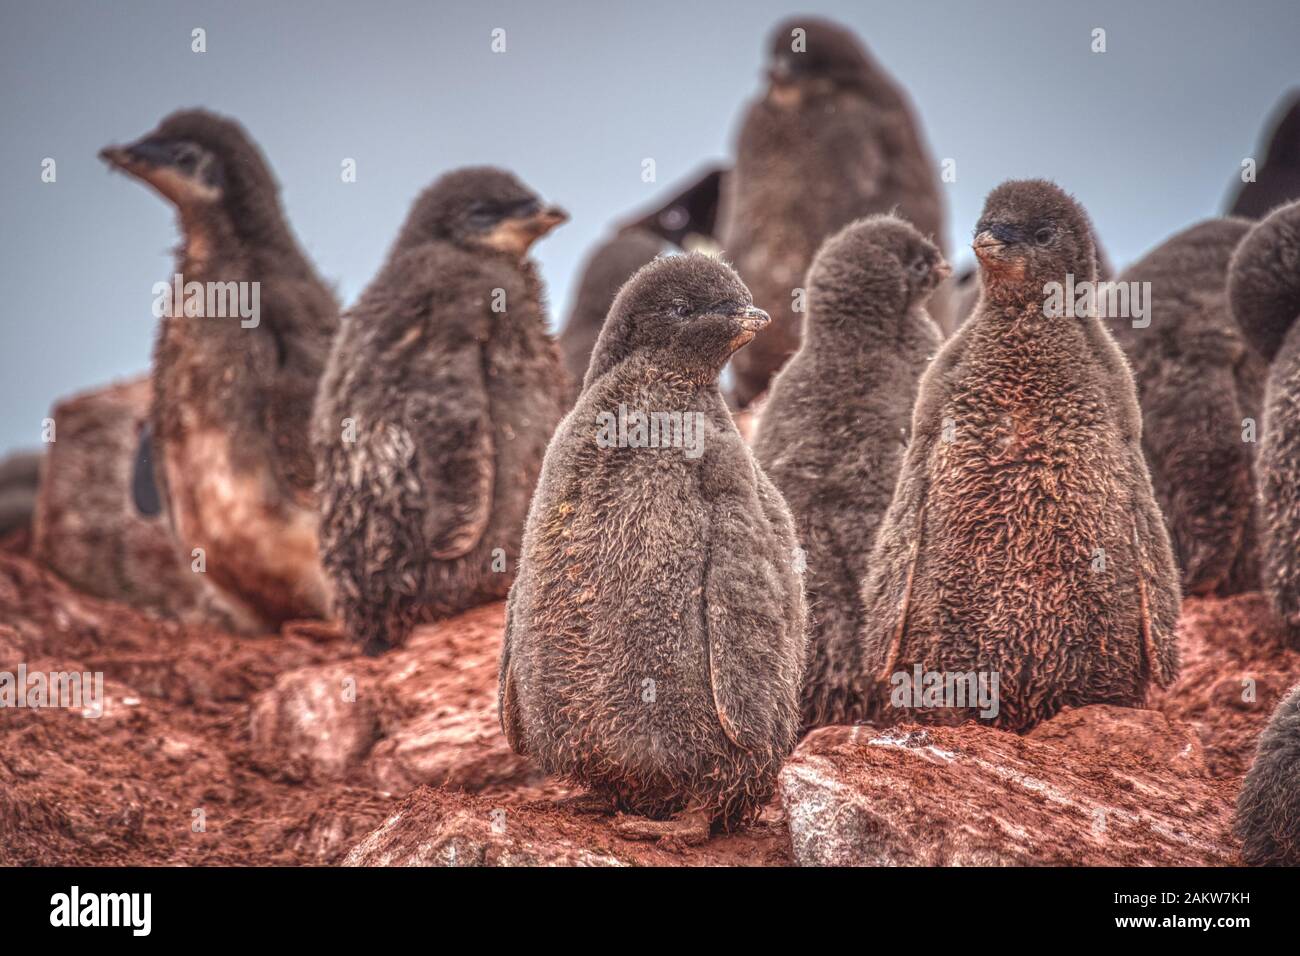 Küken von adelie-pinguinen, die auf braunem Felsland der Antarktis stehen und auf ihre Eltern warten. Nahaufnahme selektive Fokussierung Tierwelt Stockfoto